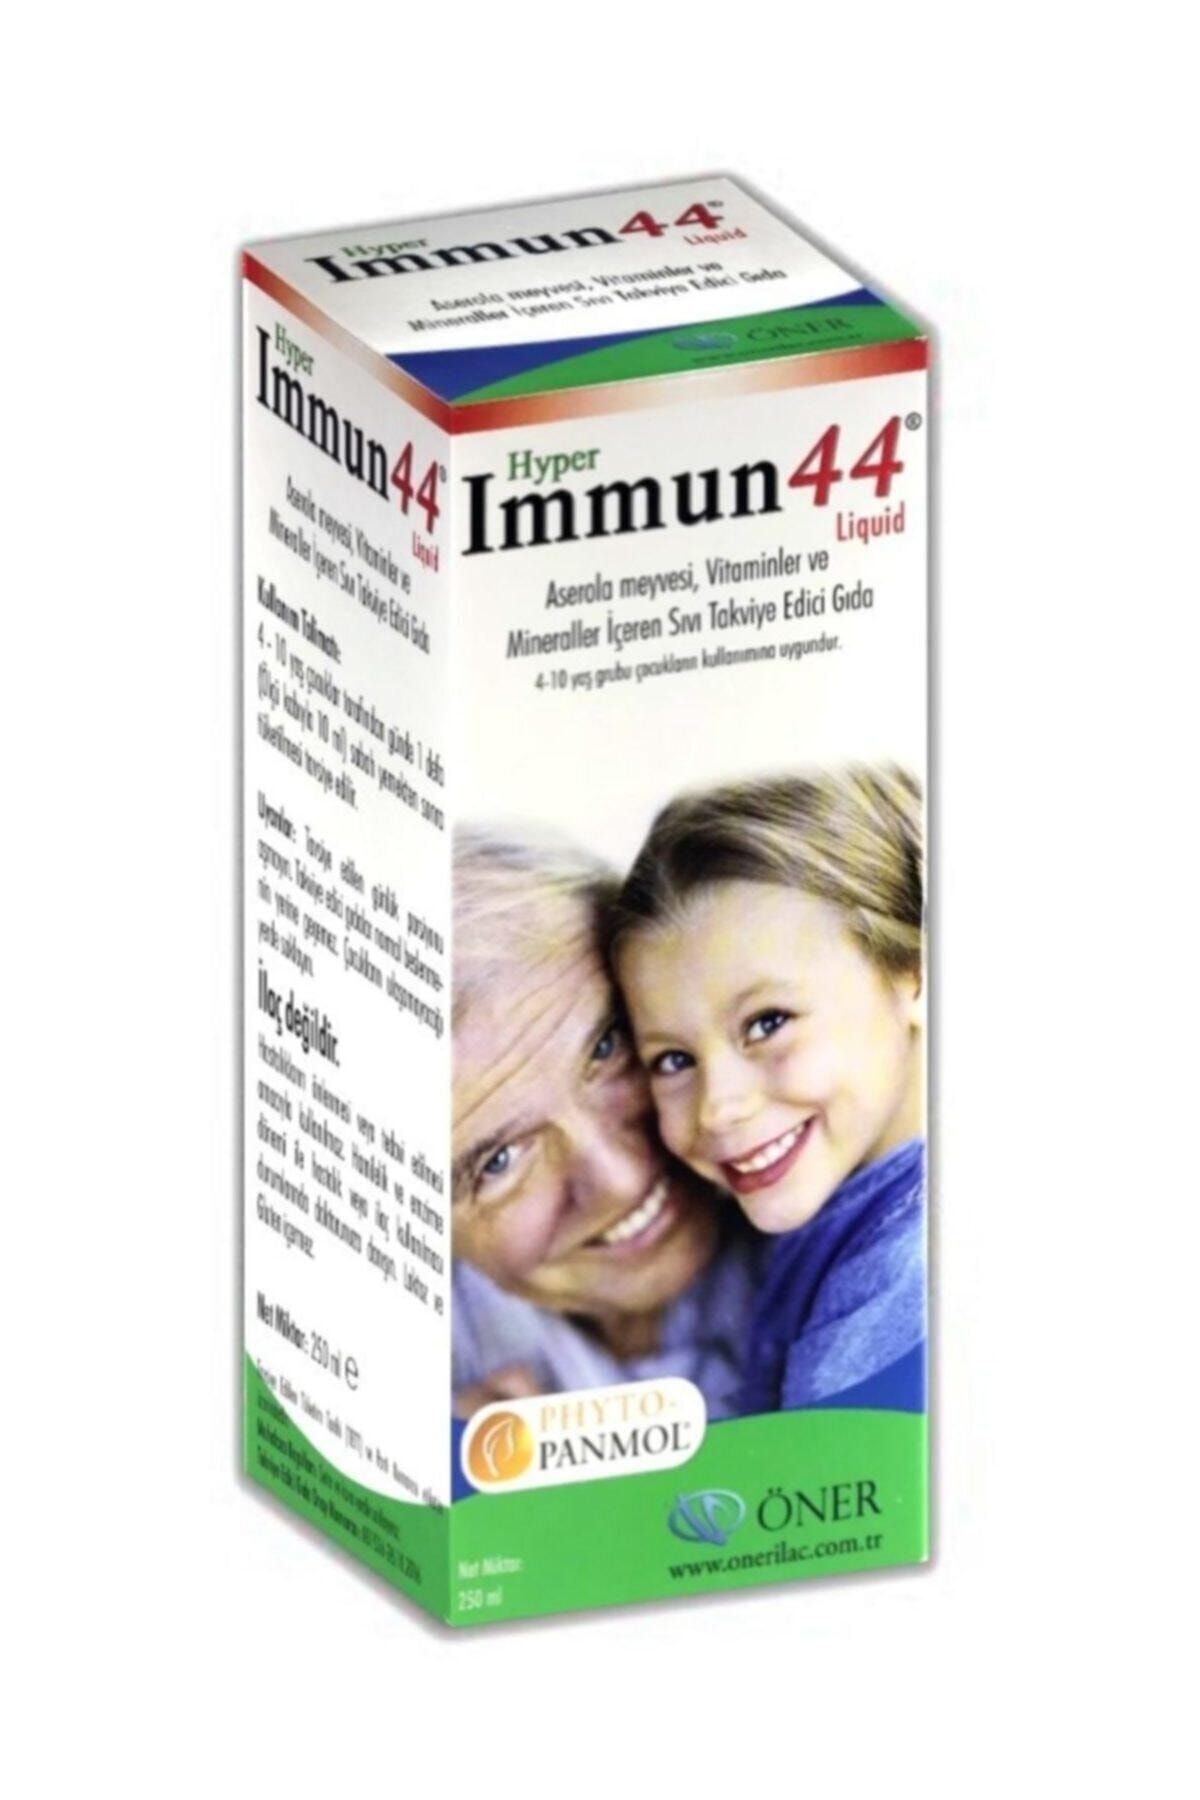 Hiper Farma Immun 44 Liquid Aserola Meyvesi Vitaminler Ve Mineraller Iceren Sivi Takviye Edici Gida Fiyati Yorumlari Trendyol